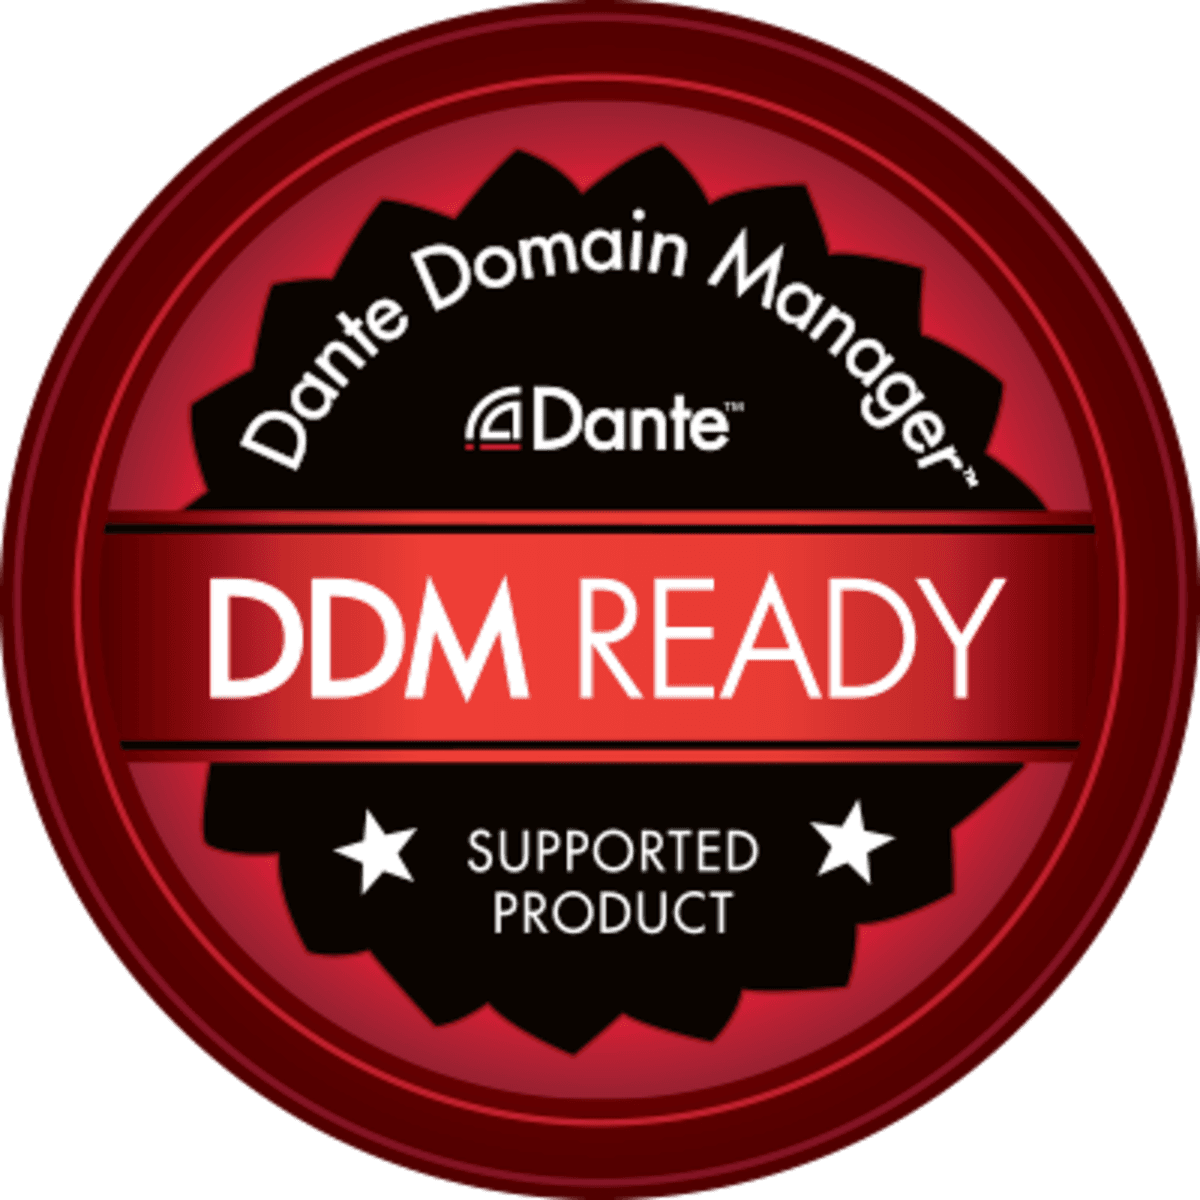 DDM Ready logo